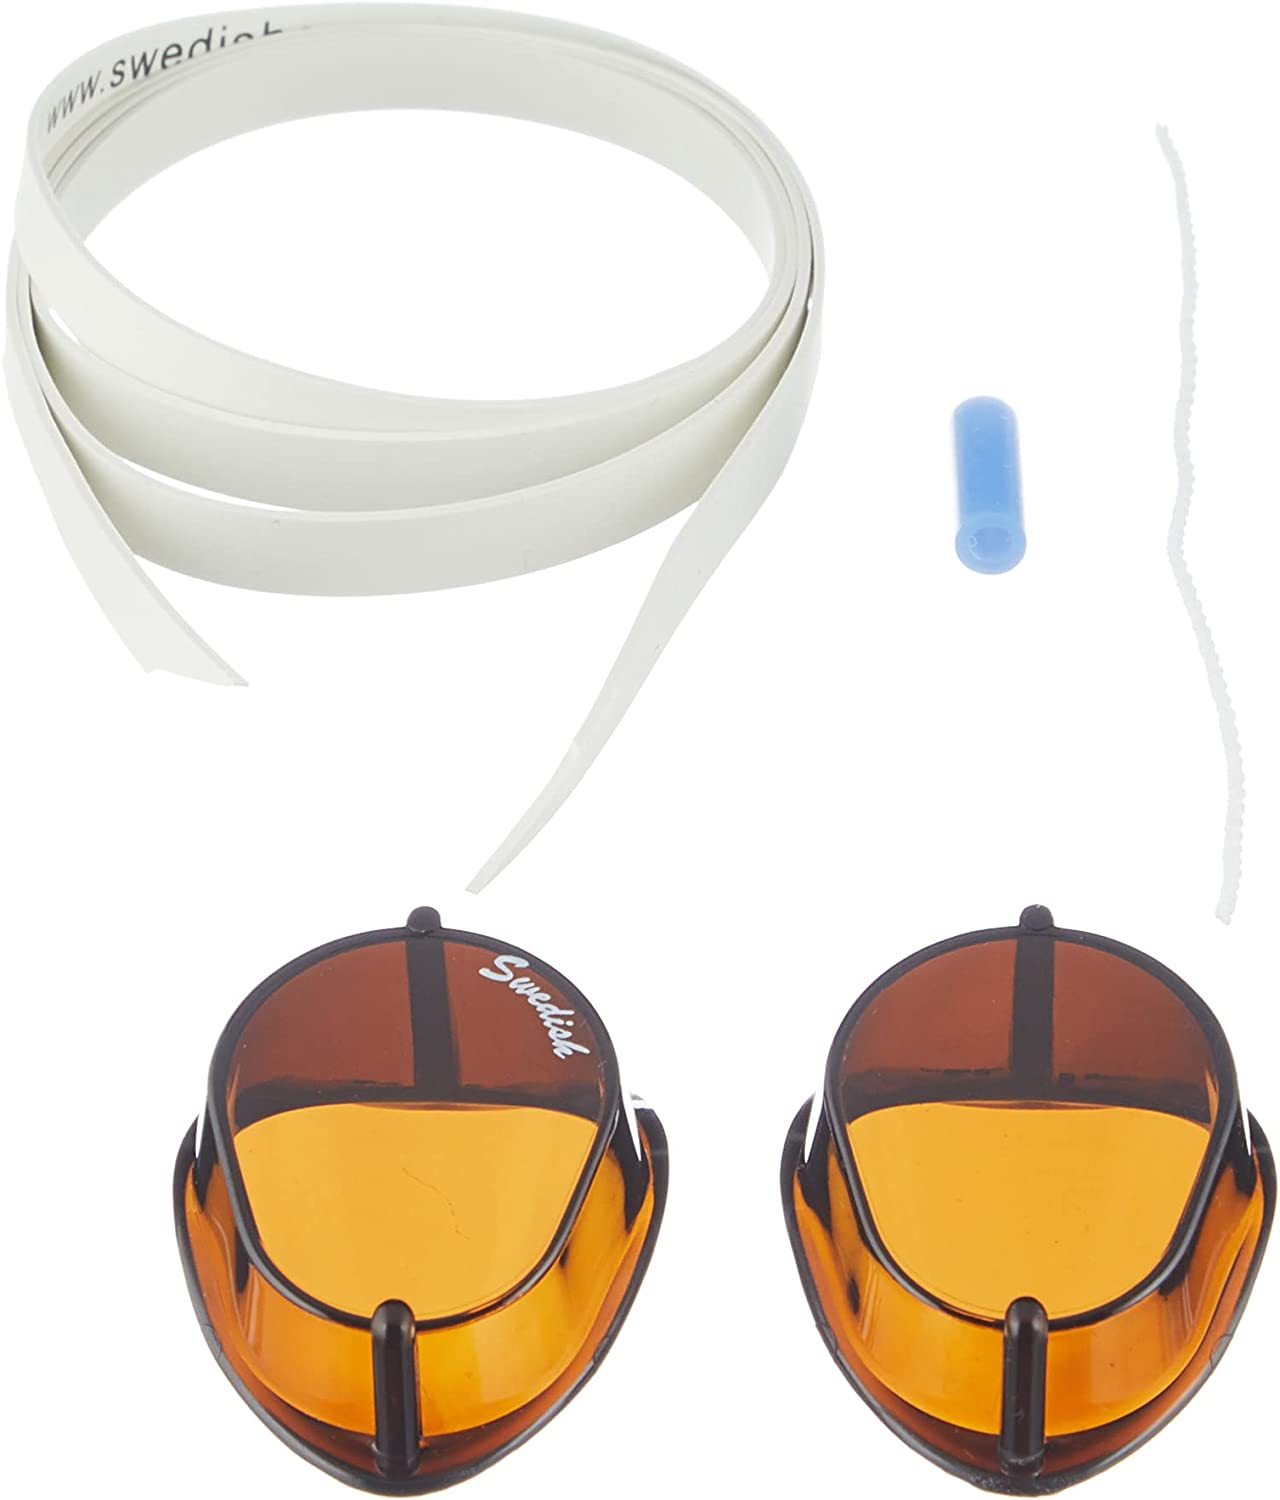 Malmsten Swedish Classic Swim Goggles - Clear